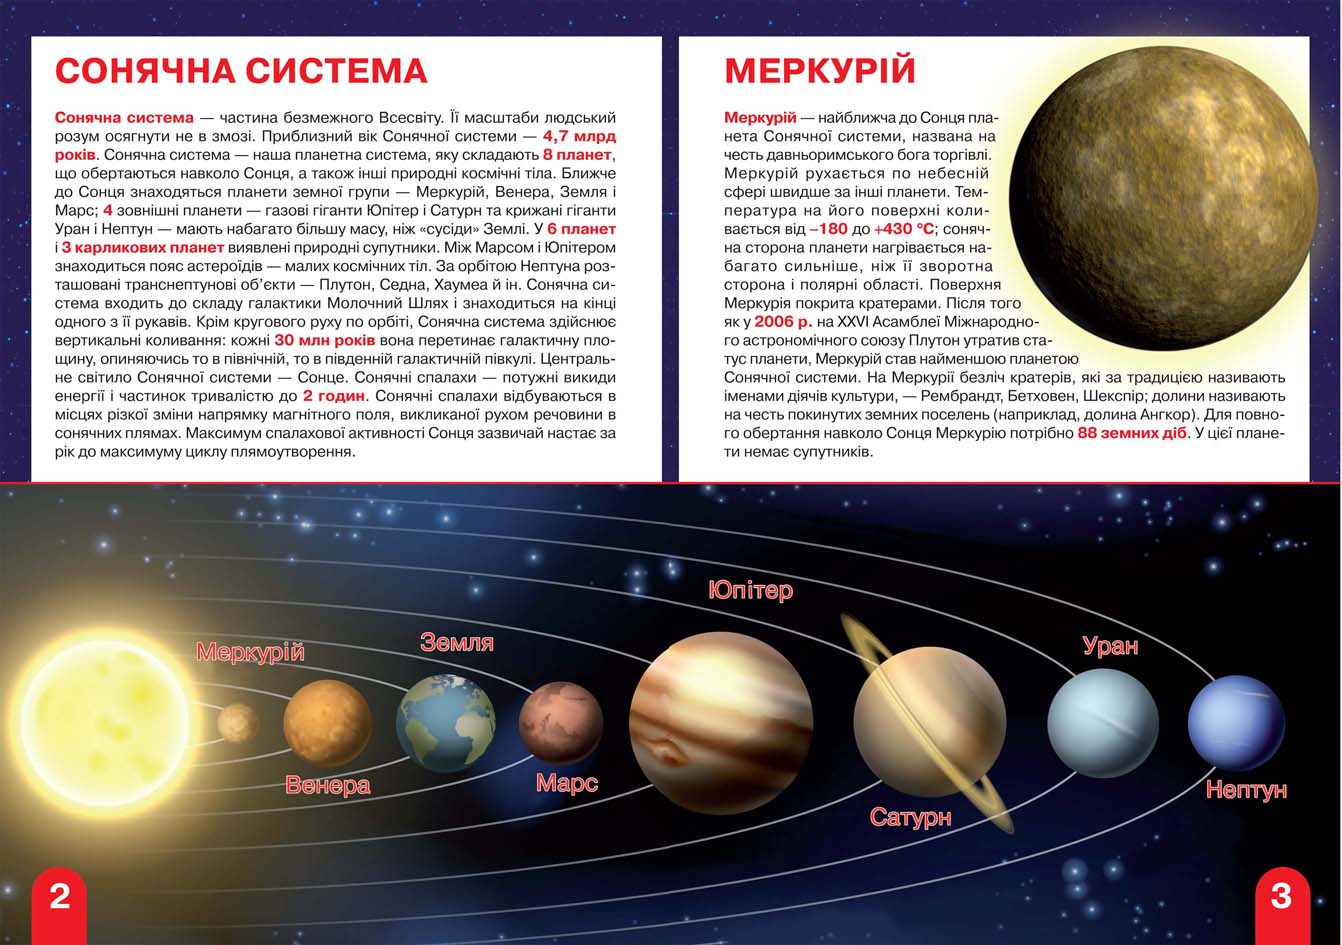 Большая книга Кристал Бук Космос: солнечная система, кометы, галактики, экзопланеты (F00019391) - фото 2